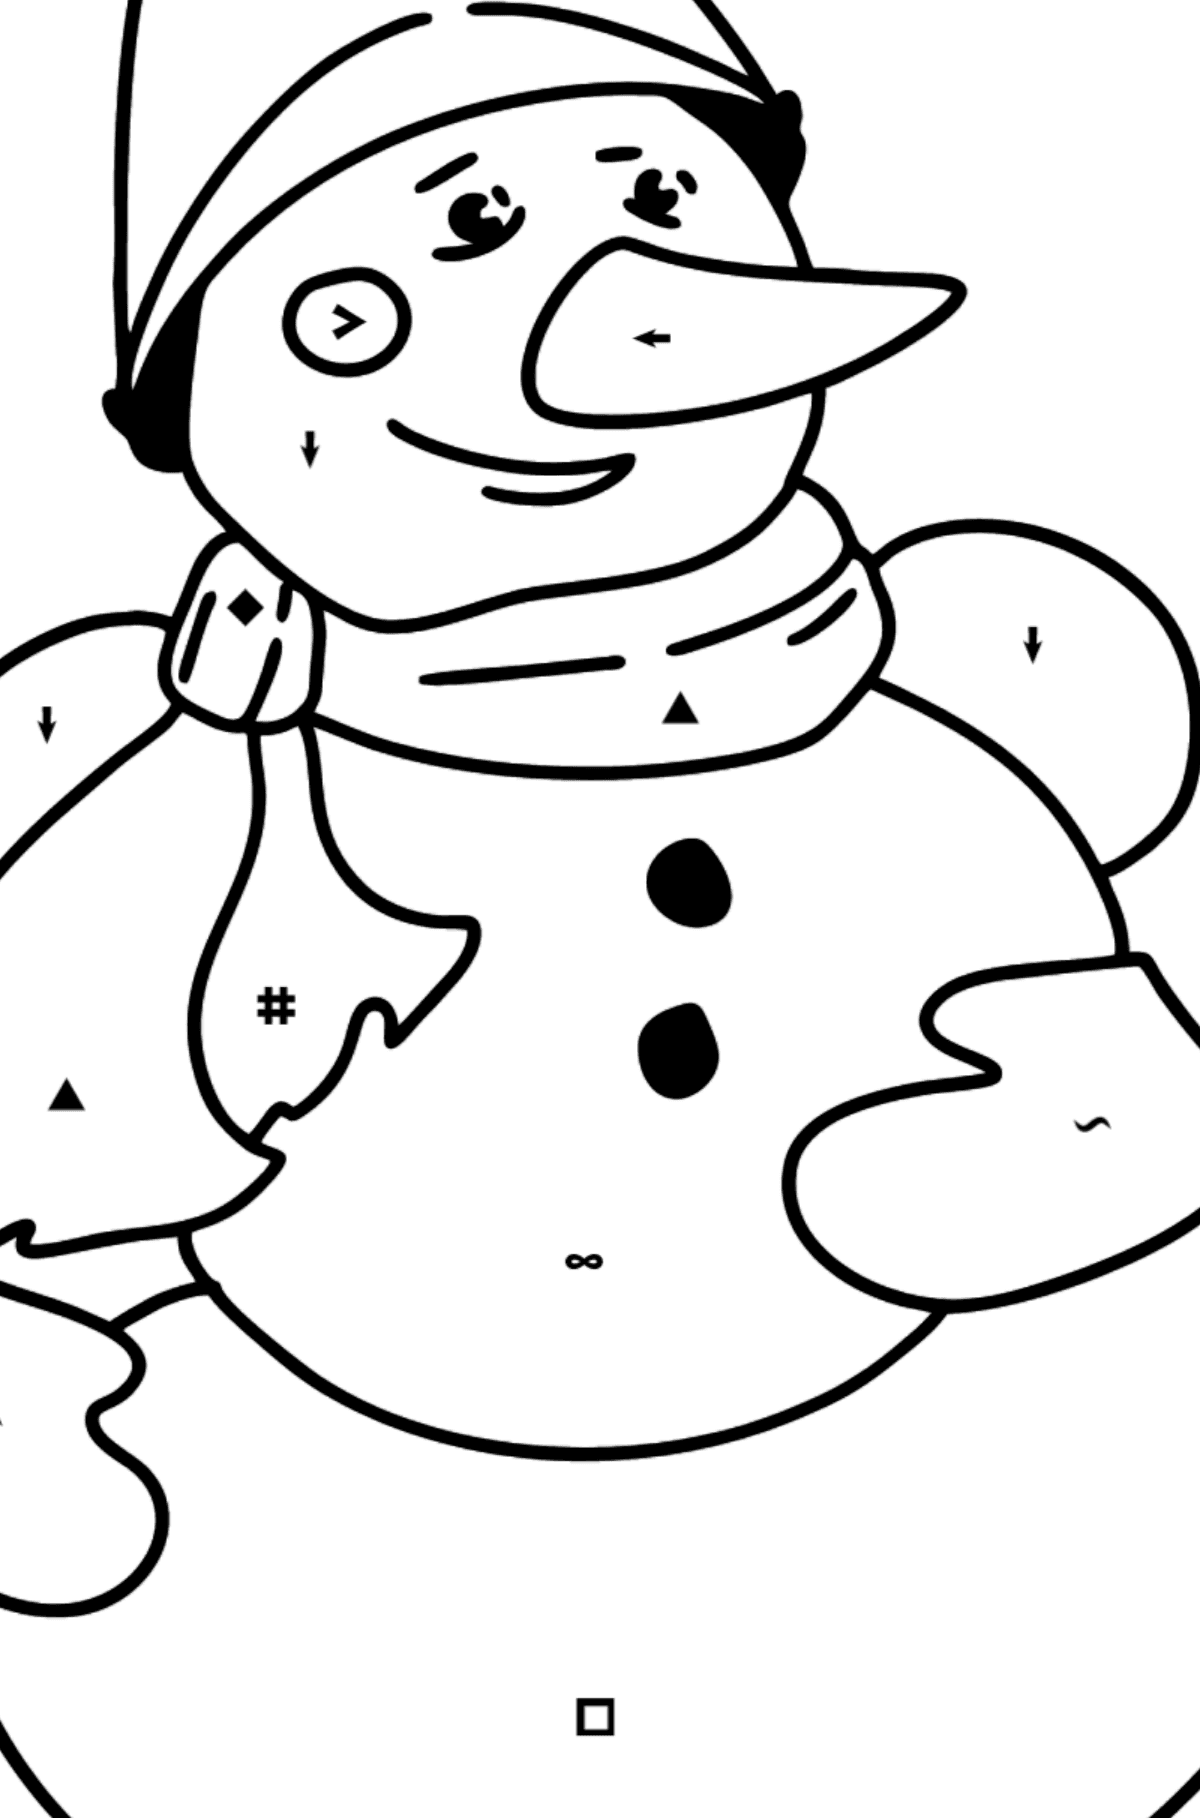 Dibujo de muñeco de nieve para colorear - Colorear por Símbolos para Niños